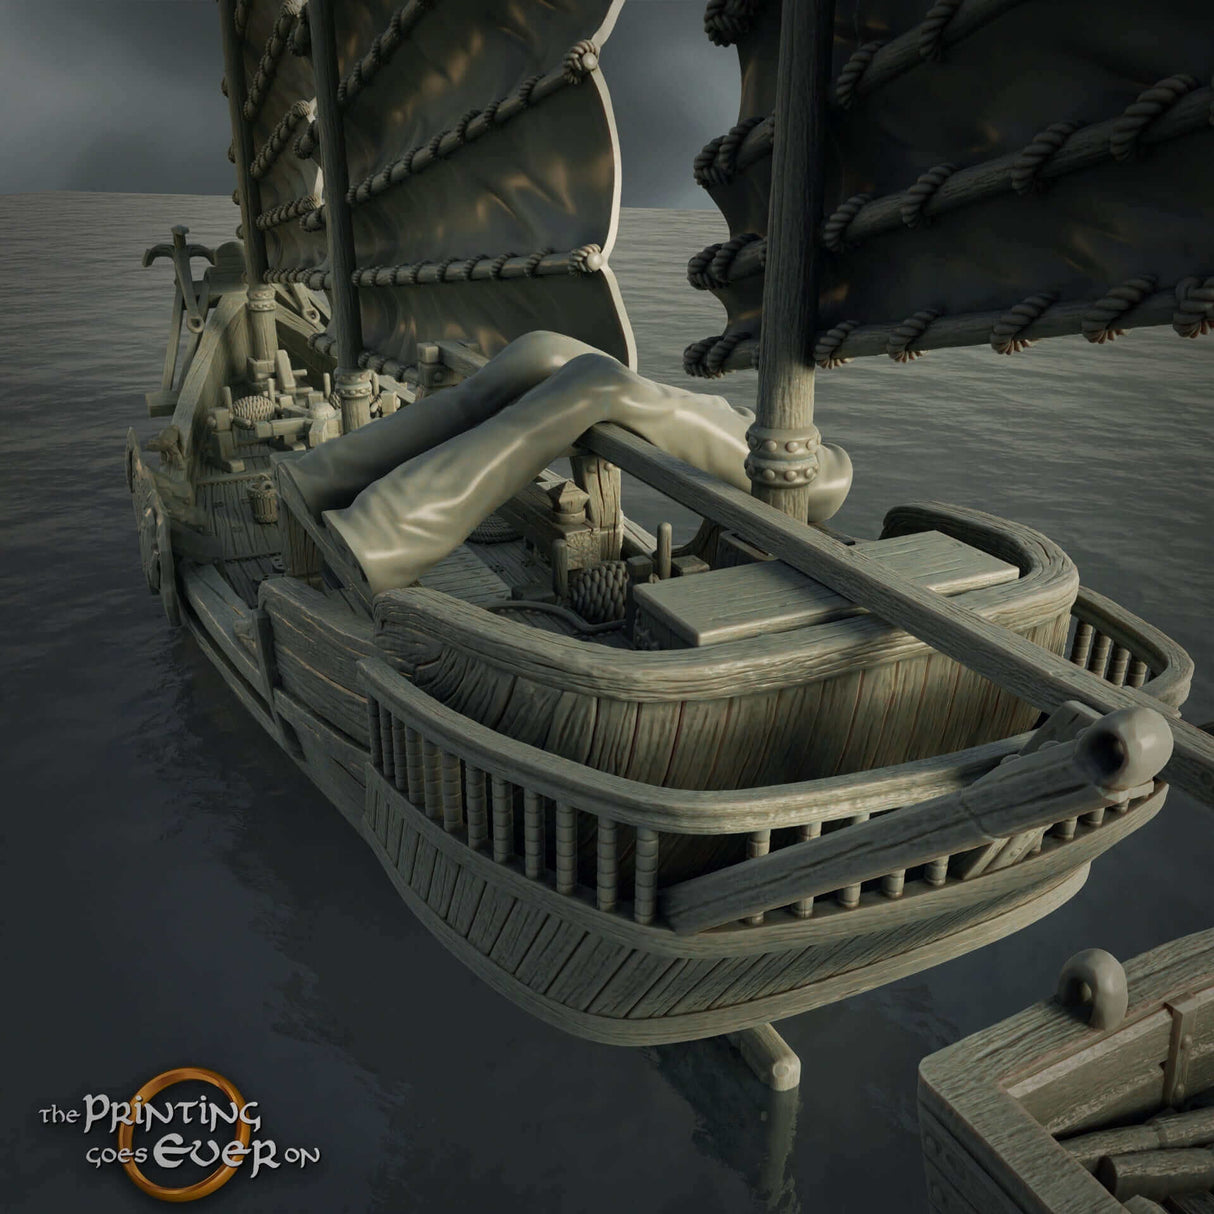 Riesen-Junk-Schiff im Maßstab 28mm Heroic für Piraten Tabletop-Spiele, aus Deutschland